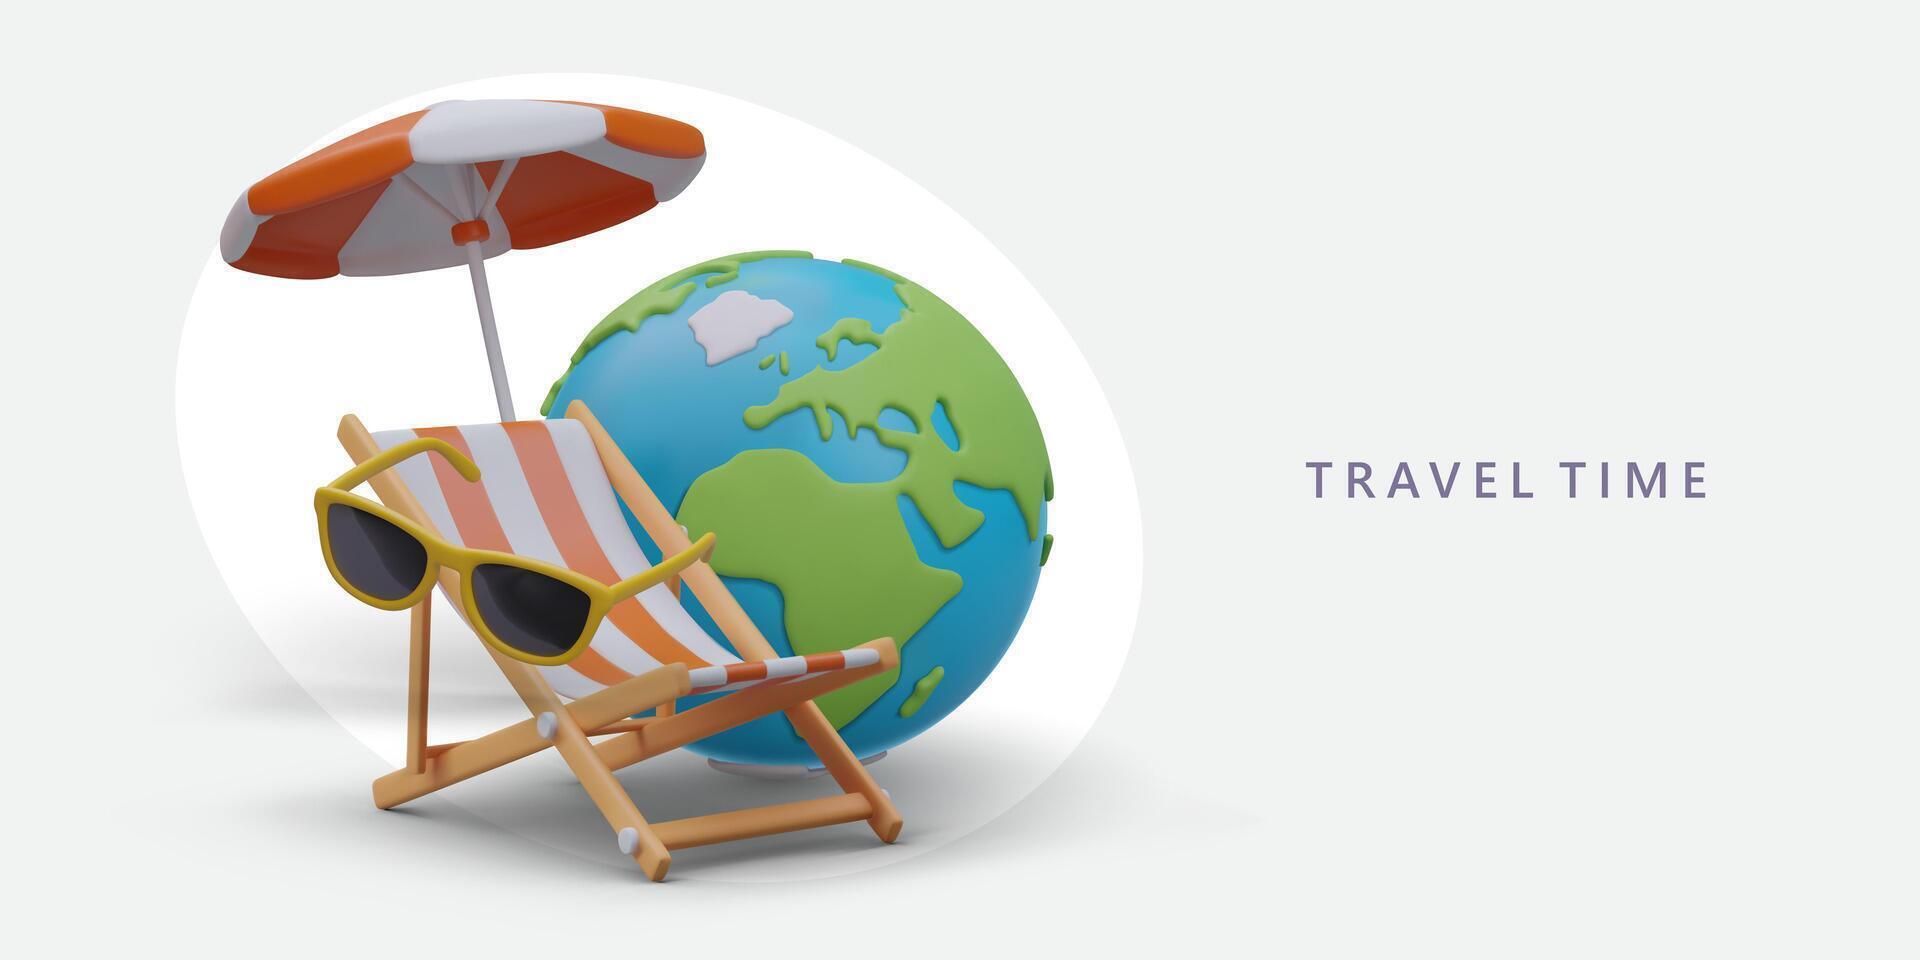 reusachtig 3d wereldbol, strand paraplu, zonnebril, dek stoel. reizen advertentie sjabloon in tekenfilm stijl vector